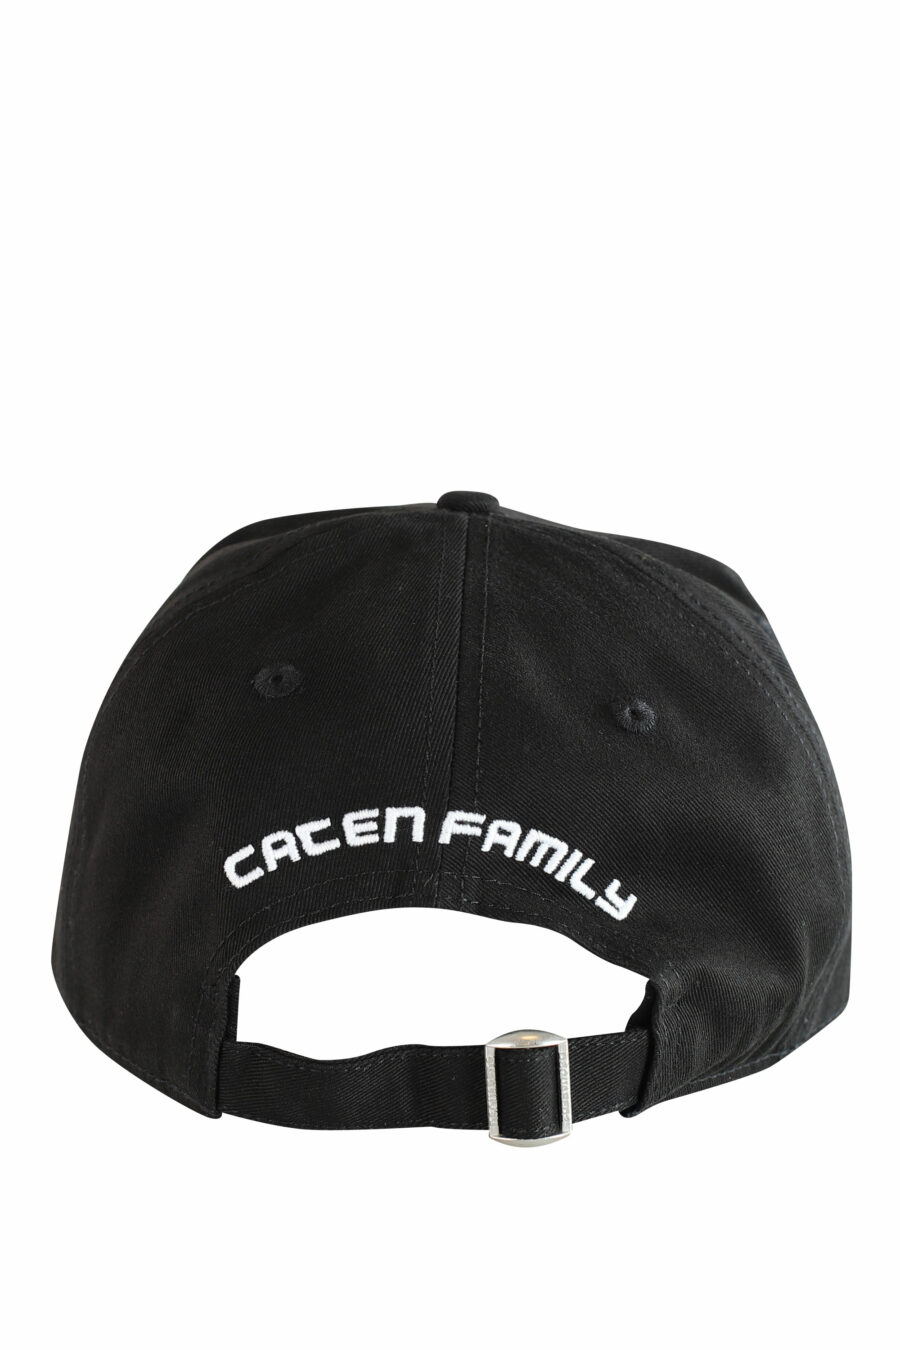 Schwarze Kappe mit weißem Logo und Blatt "cacen family" - IMG 1217